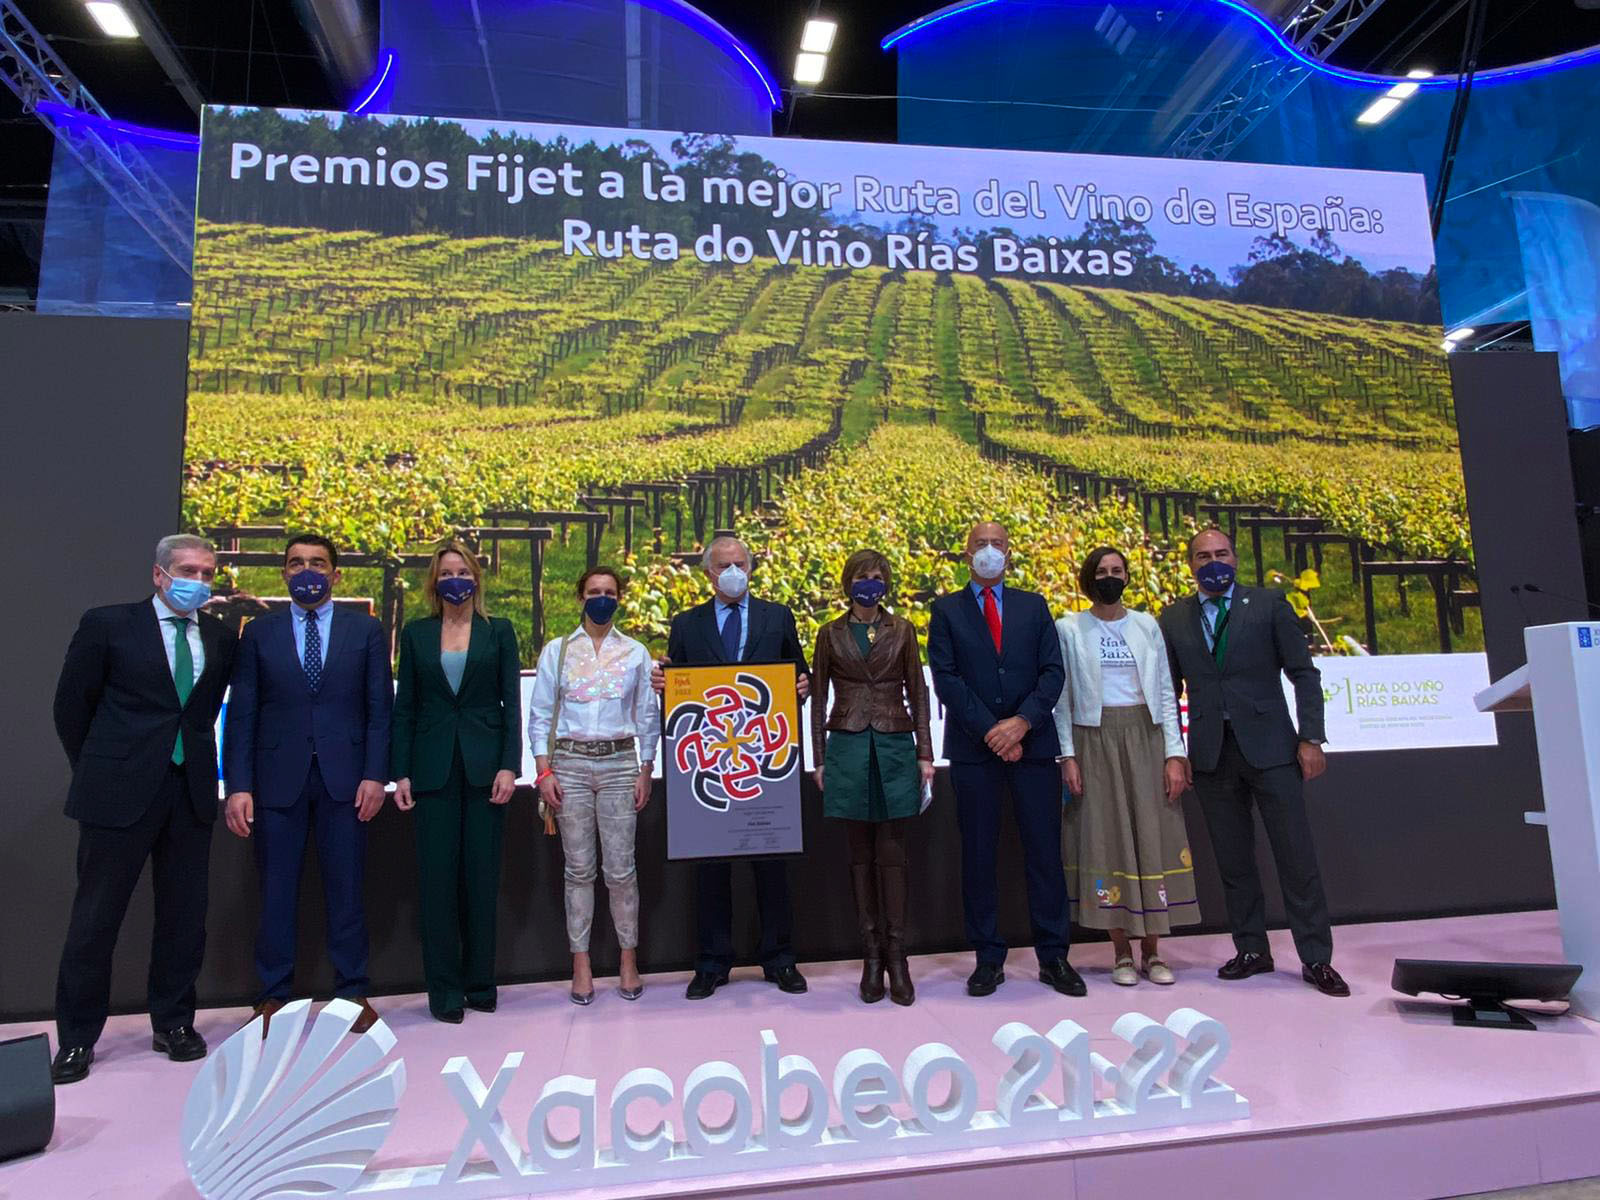 La Ruta do Viño Rías Baixas recibió hoy en el stand de Galicia en Fitur el premio FIJET España 2022  a la Mejor Ruta del Vino